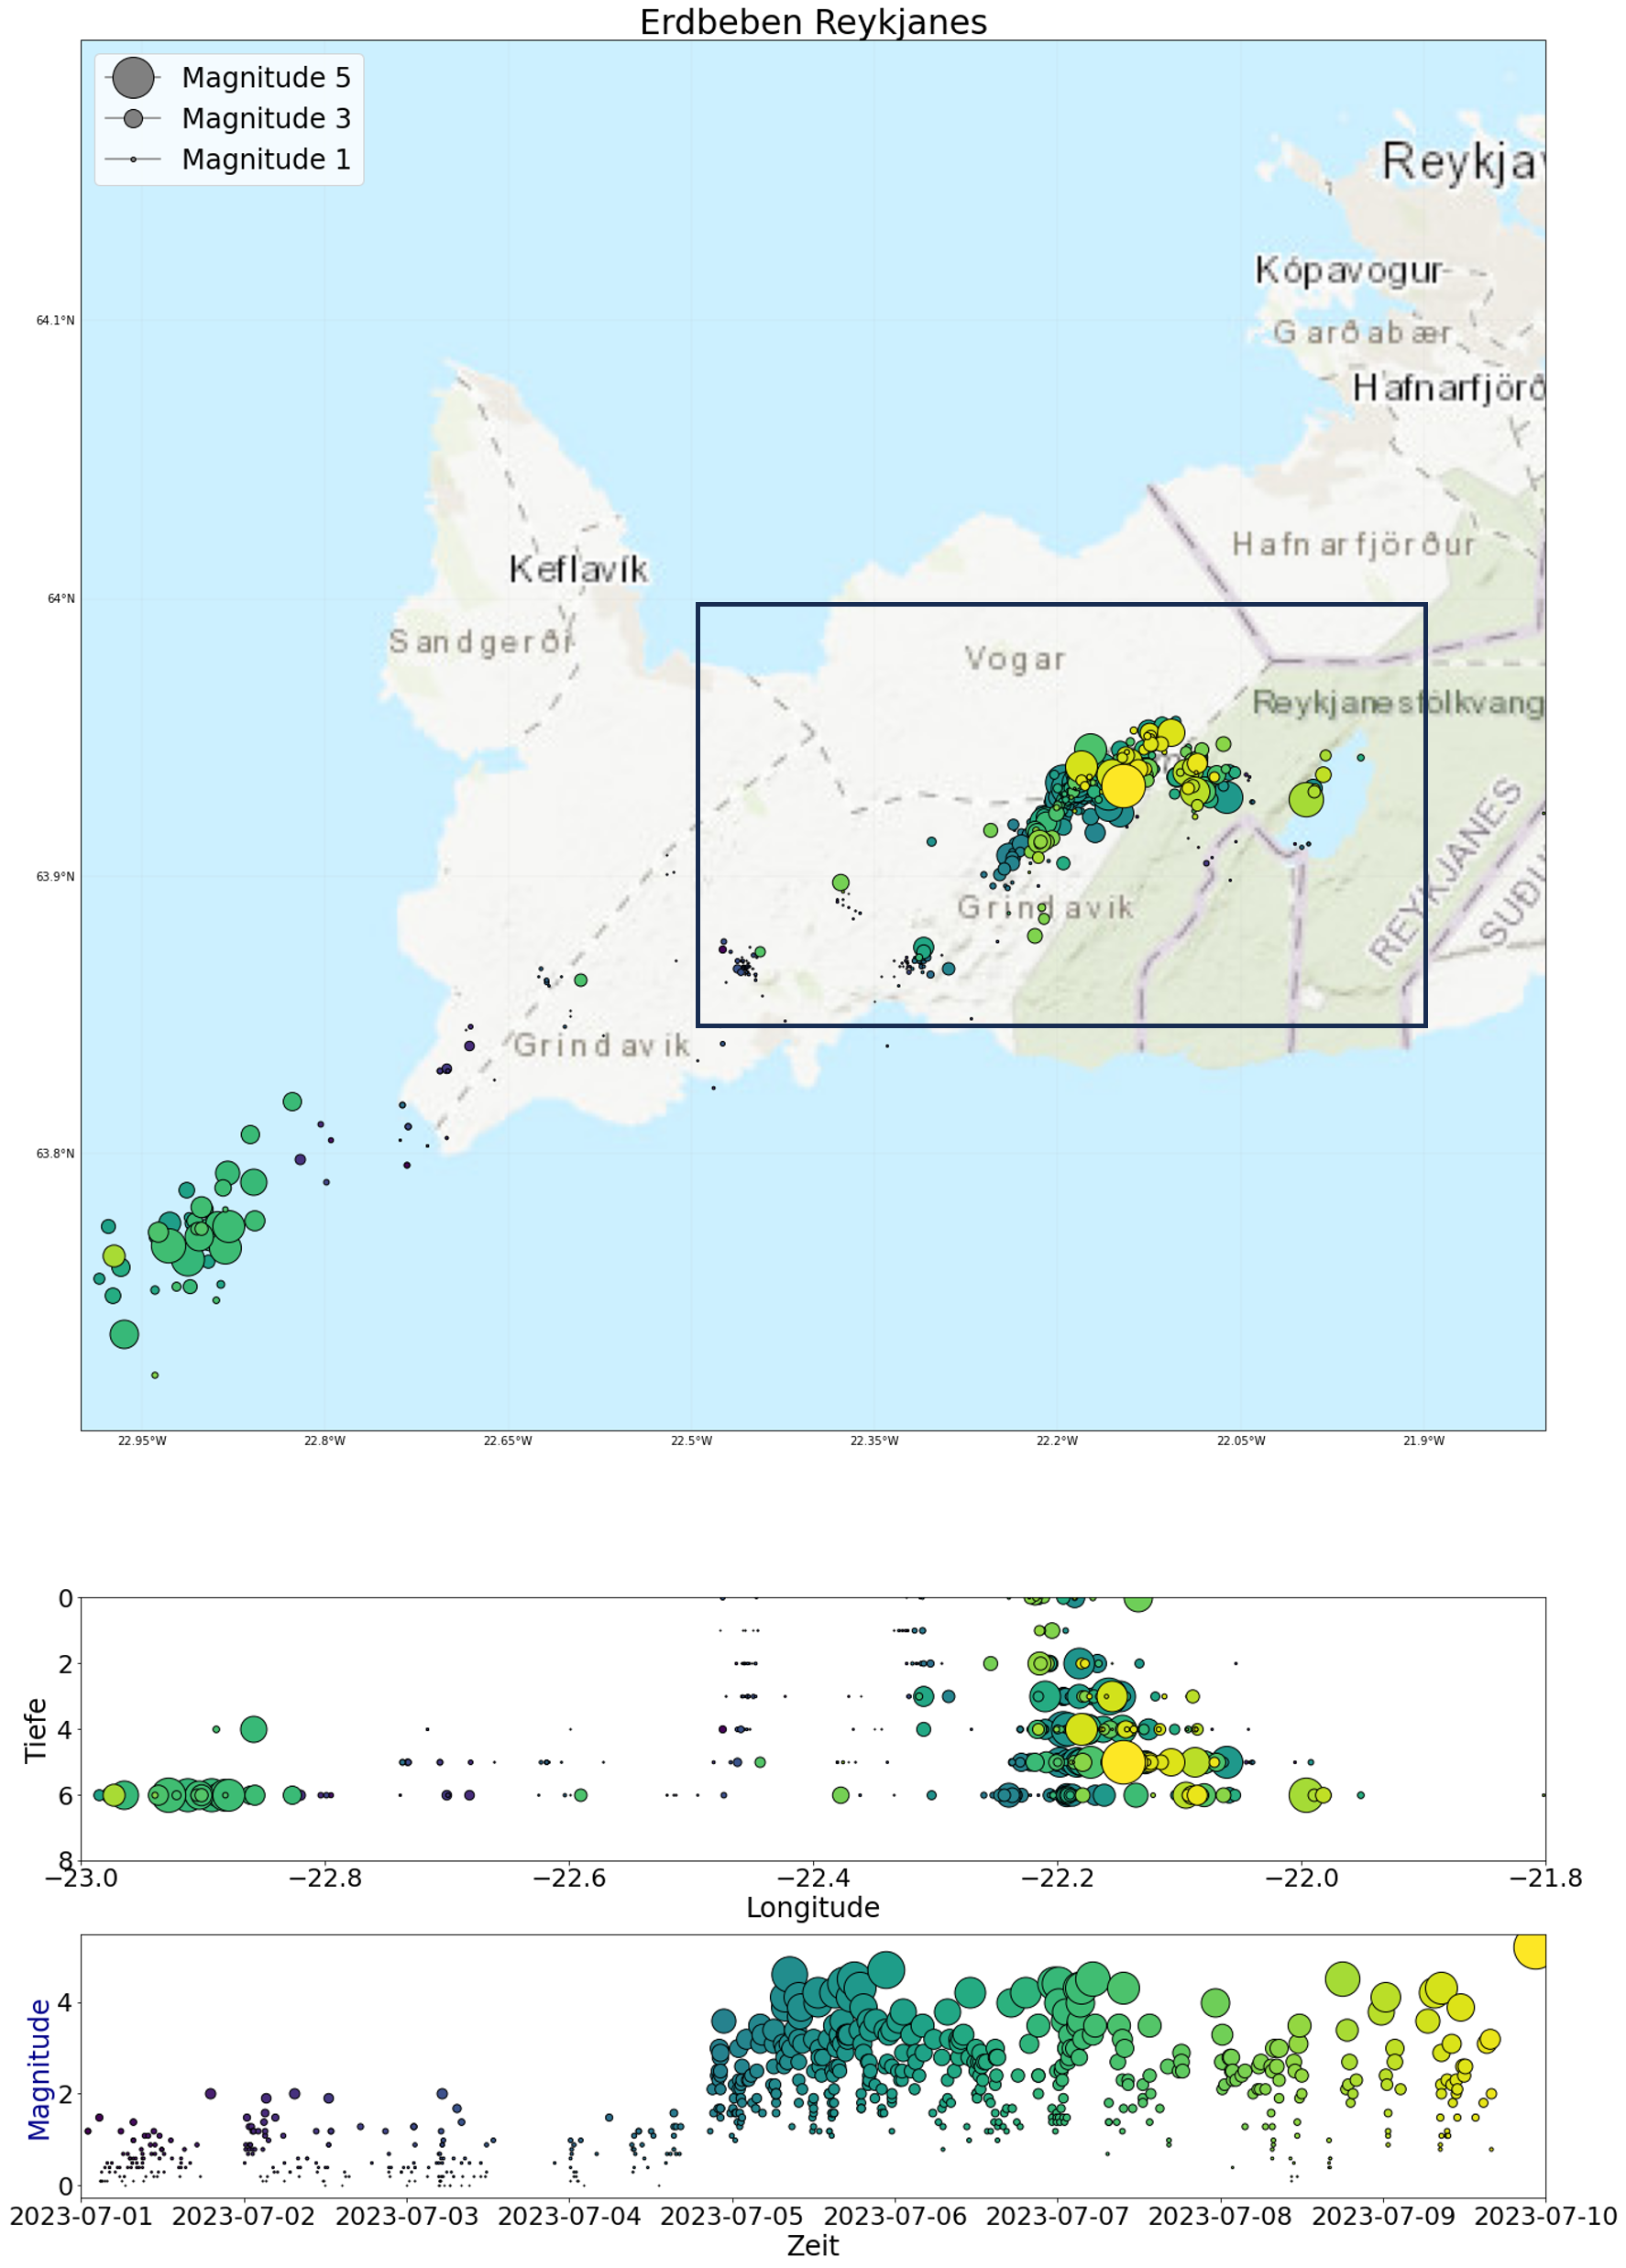 Abbildung 1: Erdbebenaktivität auf der Reykjanes-Halbinsel seit 1. Juli 2023